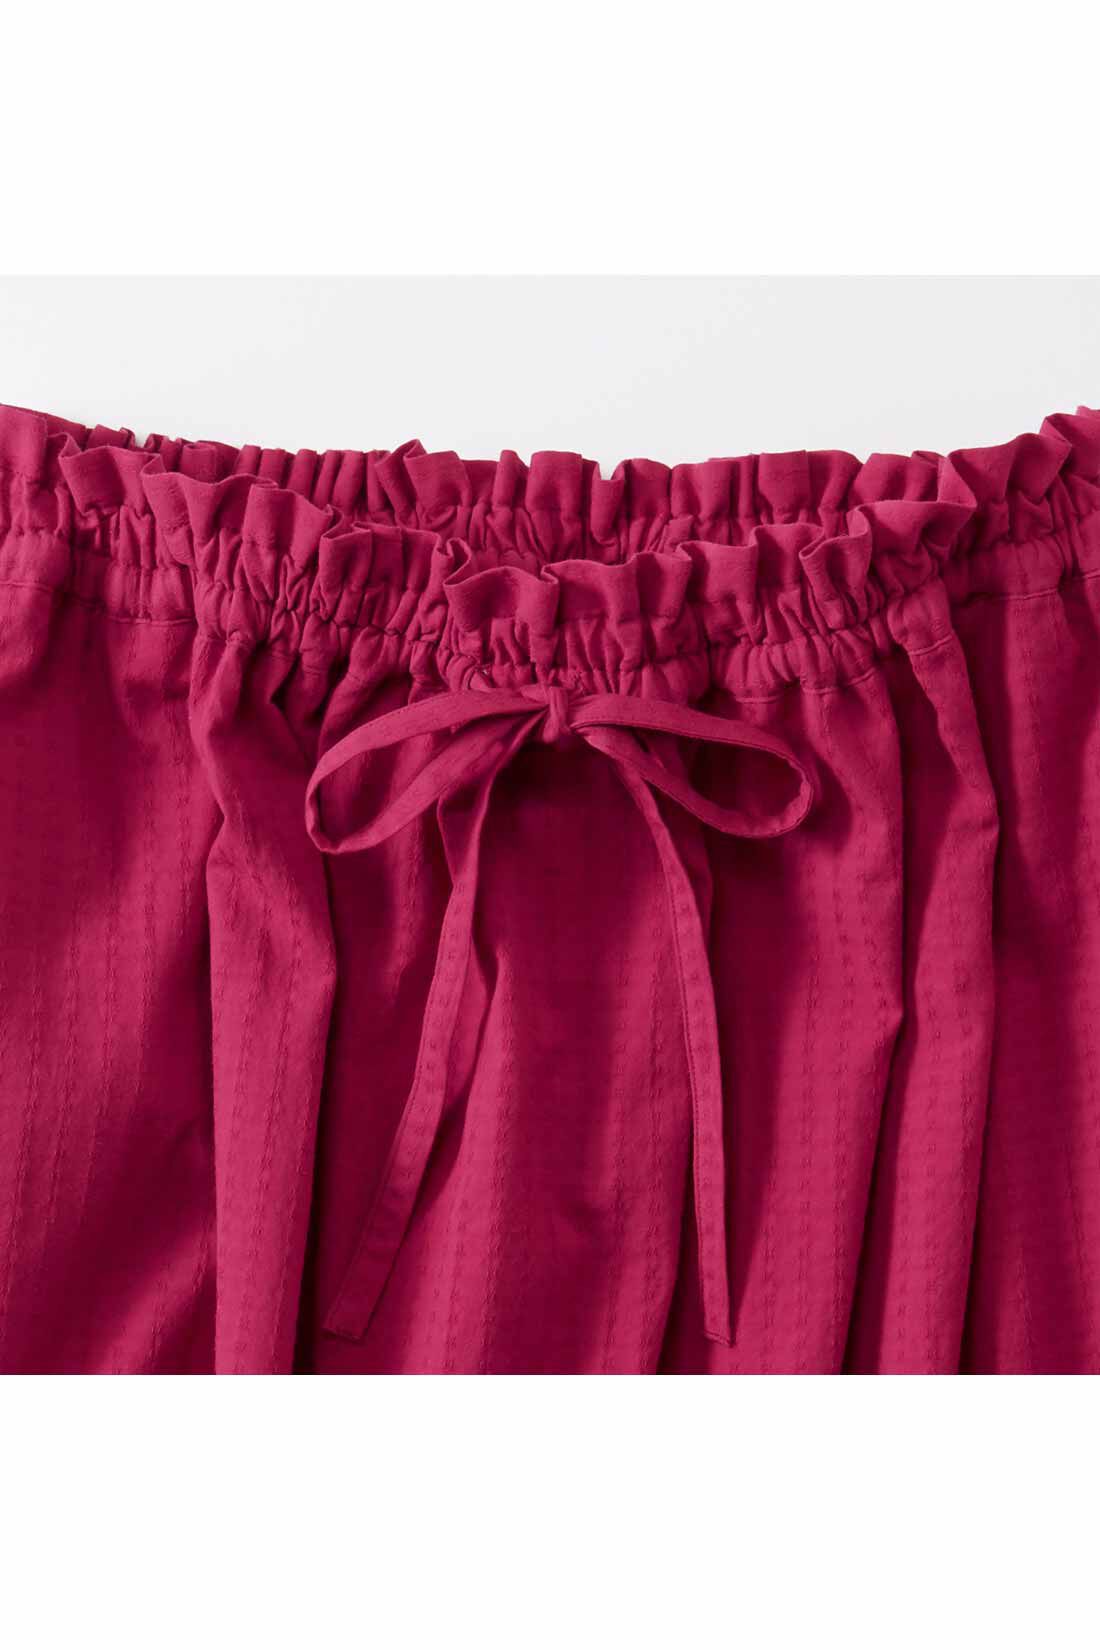 Real Stock|THREE FIFTY STANDARD　赤のドビーストライプギャザースカート|ウエストはゴムとひも仕様で、きれいなギャザー仕上げ。